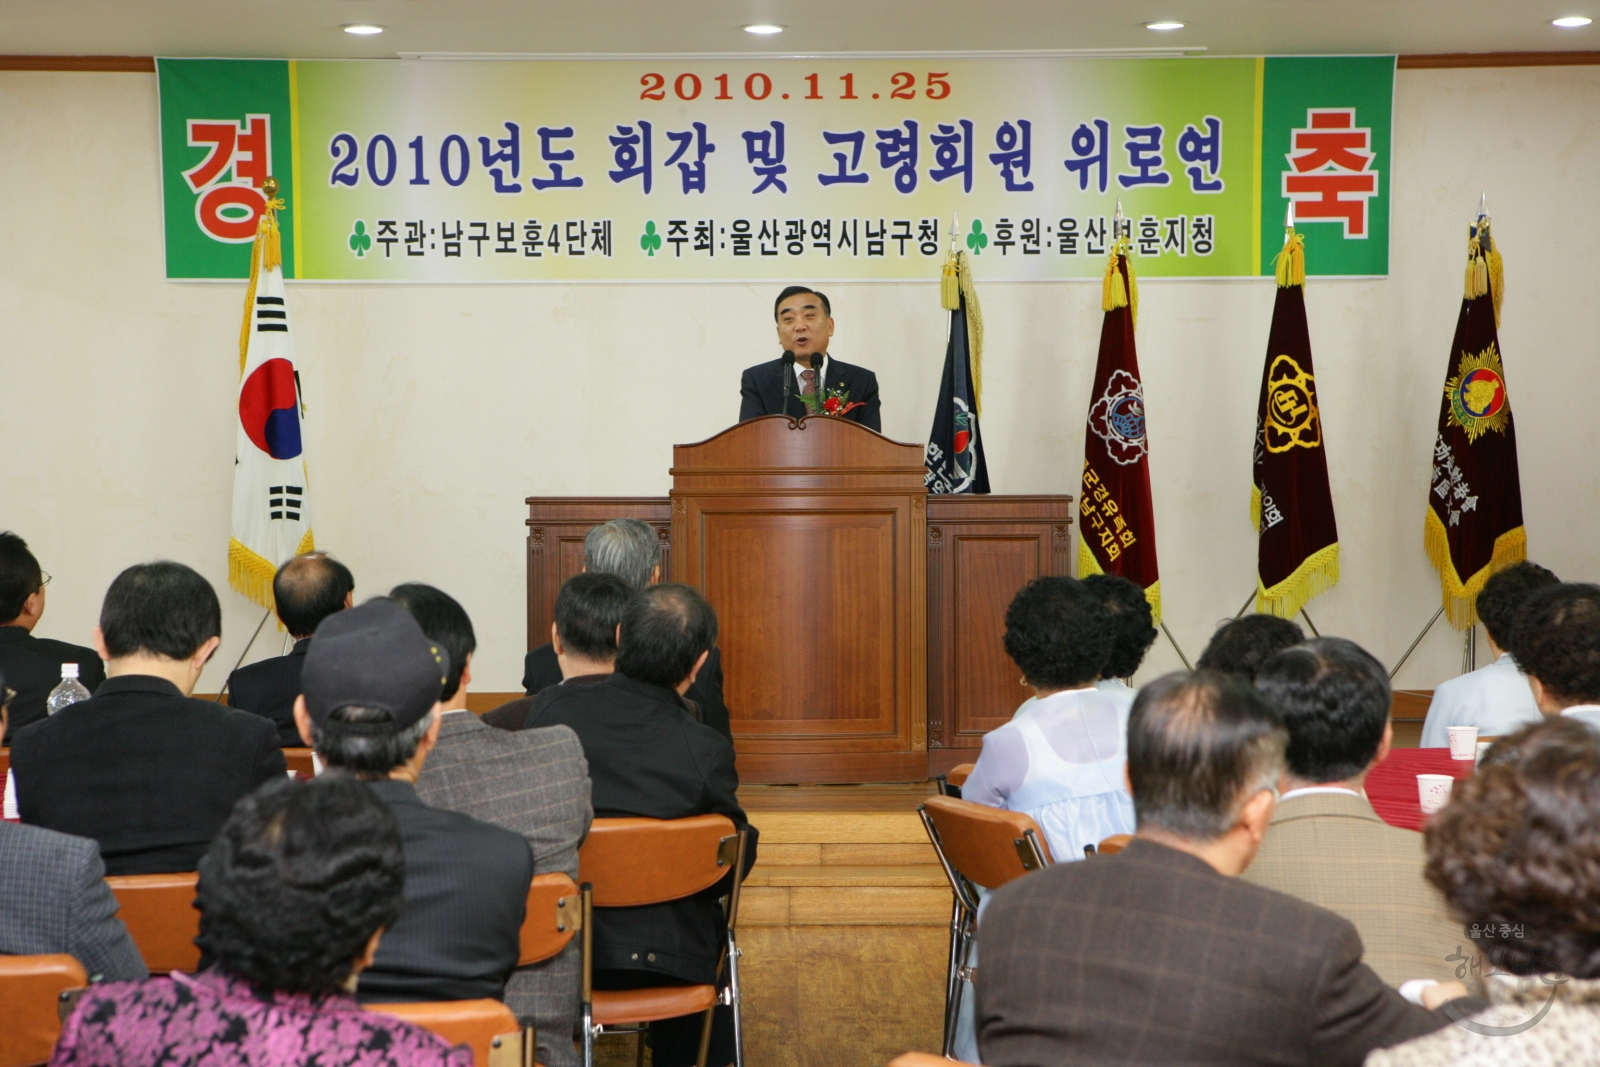 남구보훈4단체 2010년도 회갑 및 고령회원 위로연 의 사진